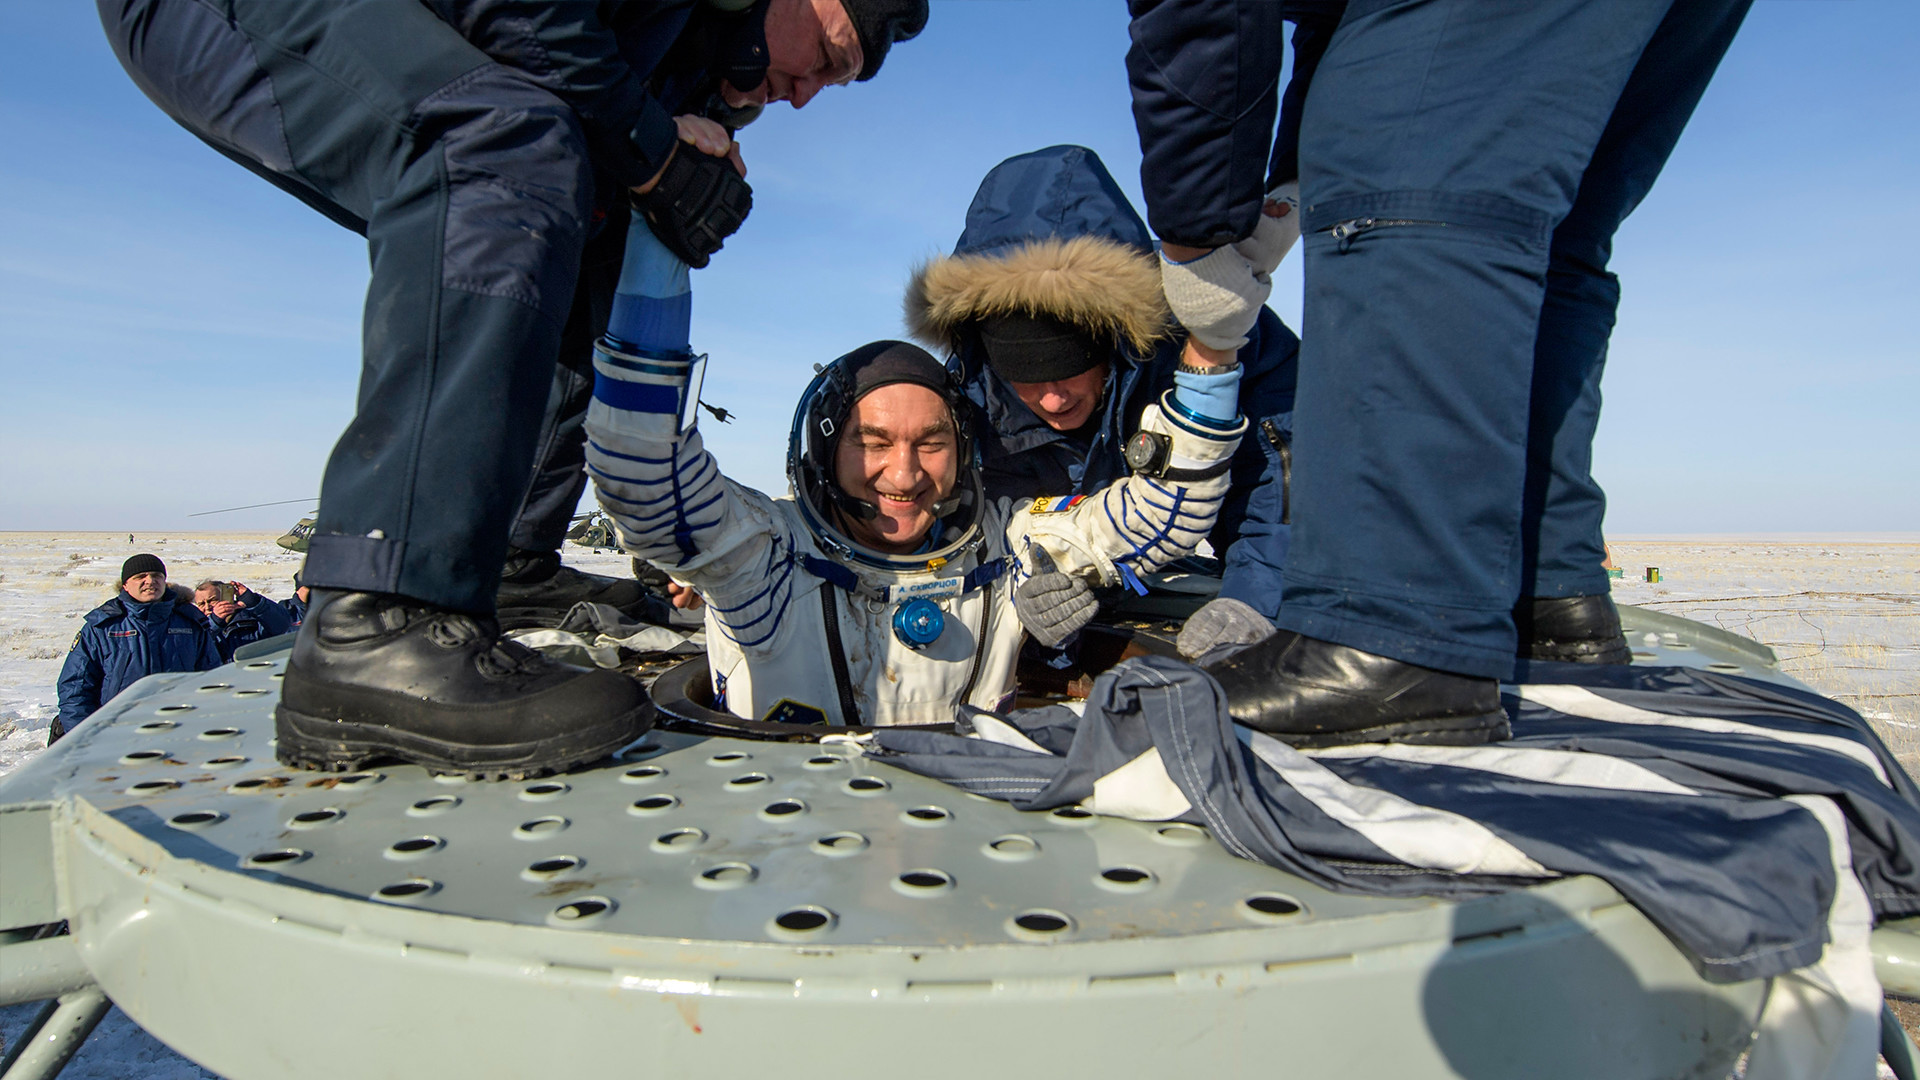 Космонавту Роскосмоса Александру Скворцову помогают выйти из космического корабля "Союз МС-13" после приземления аппарата недалеко от города Жезказган в Казахстане. 6 февраля 2020 года